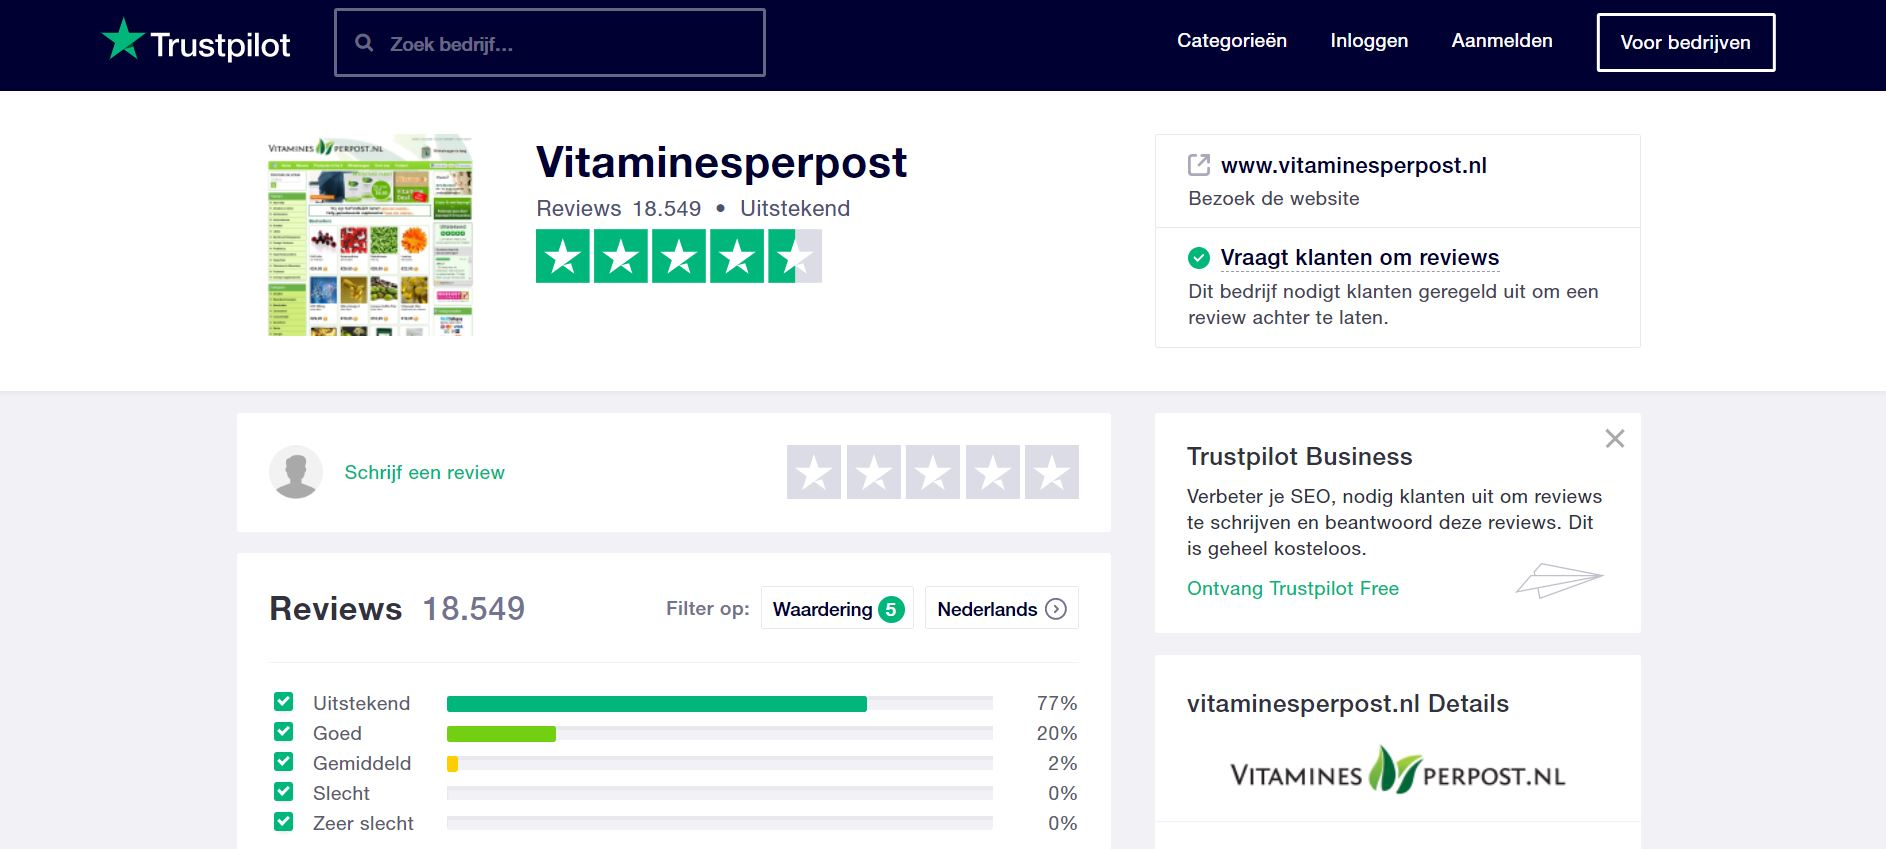 solo stap in Bedankt Meer conversies en meer vertrouwen voor Vitaminesperpost.nl dankzij reviews  - Trustpilot Business Blog